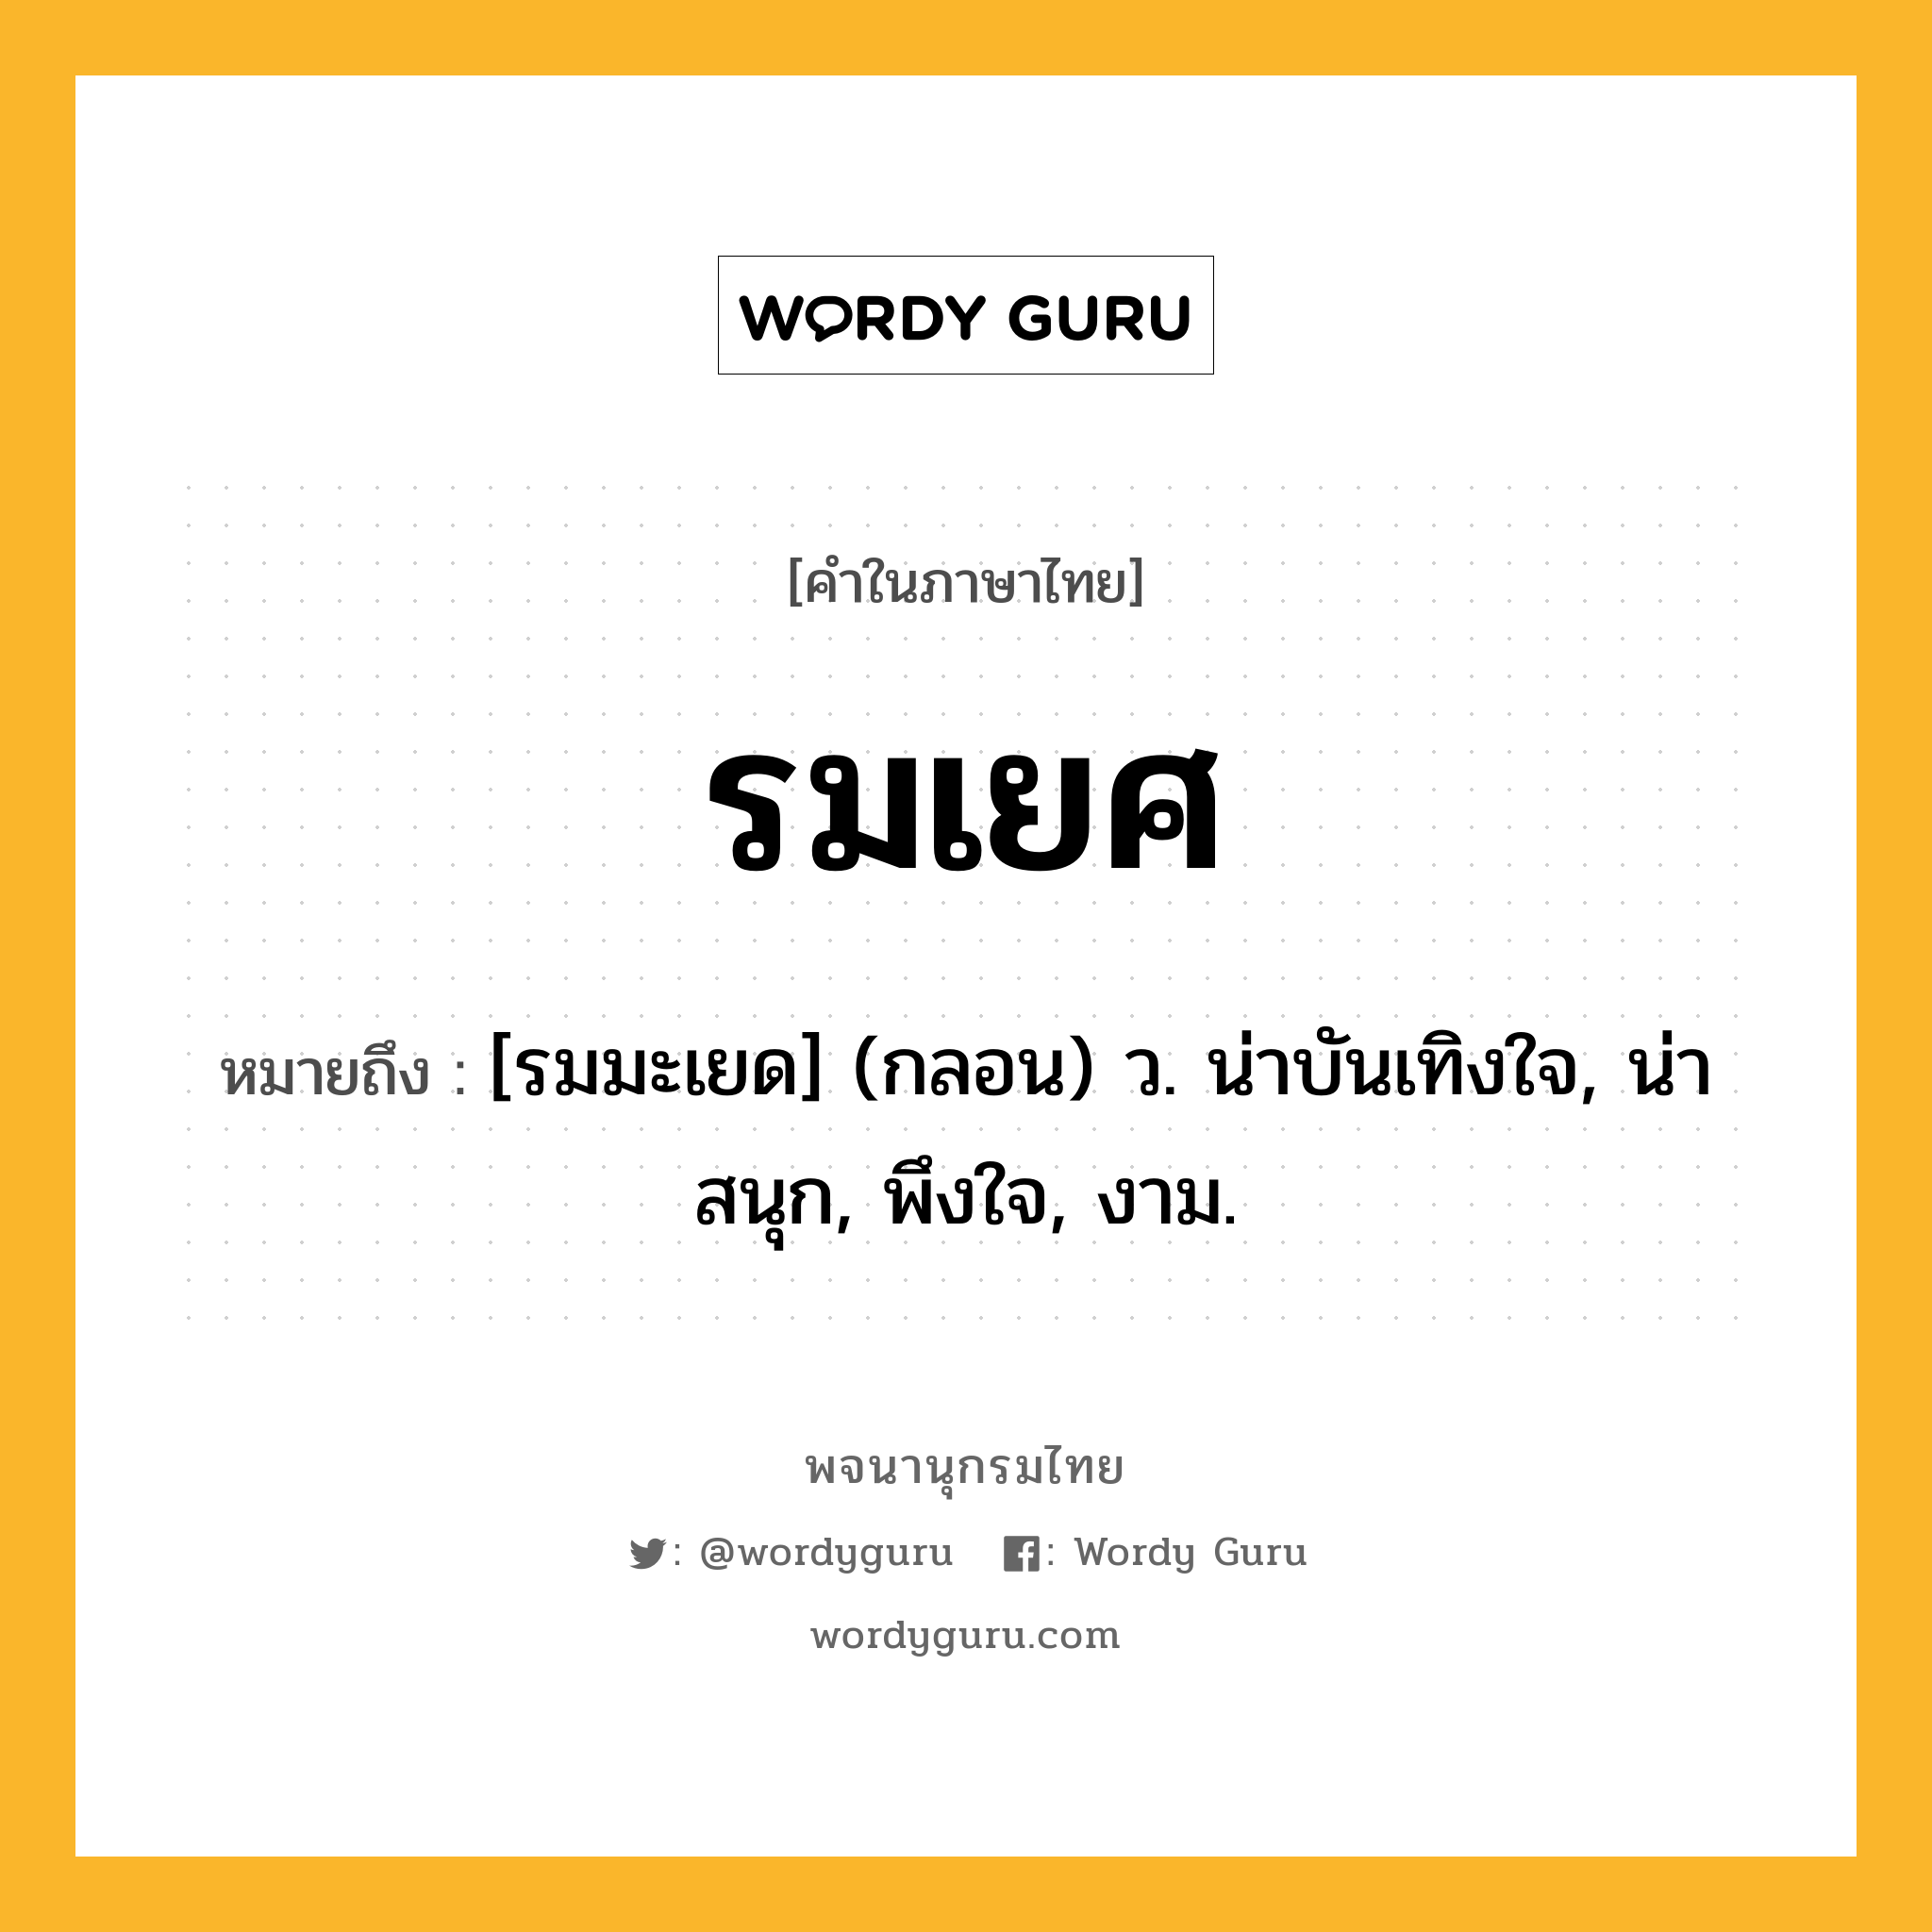 รมเยศ ความหมาย หมายถึงอะไร?, คำในภาษาไทย รมเยศ หมายถึง [รมมะเยด] (กลอน) ว. น่าบันเทิงใจ, น่าสนุก, พึงใจ, งาม.